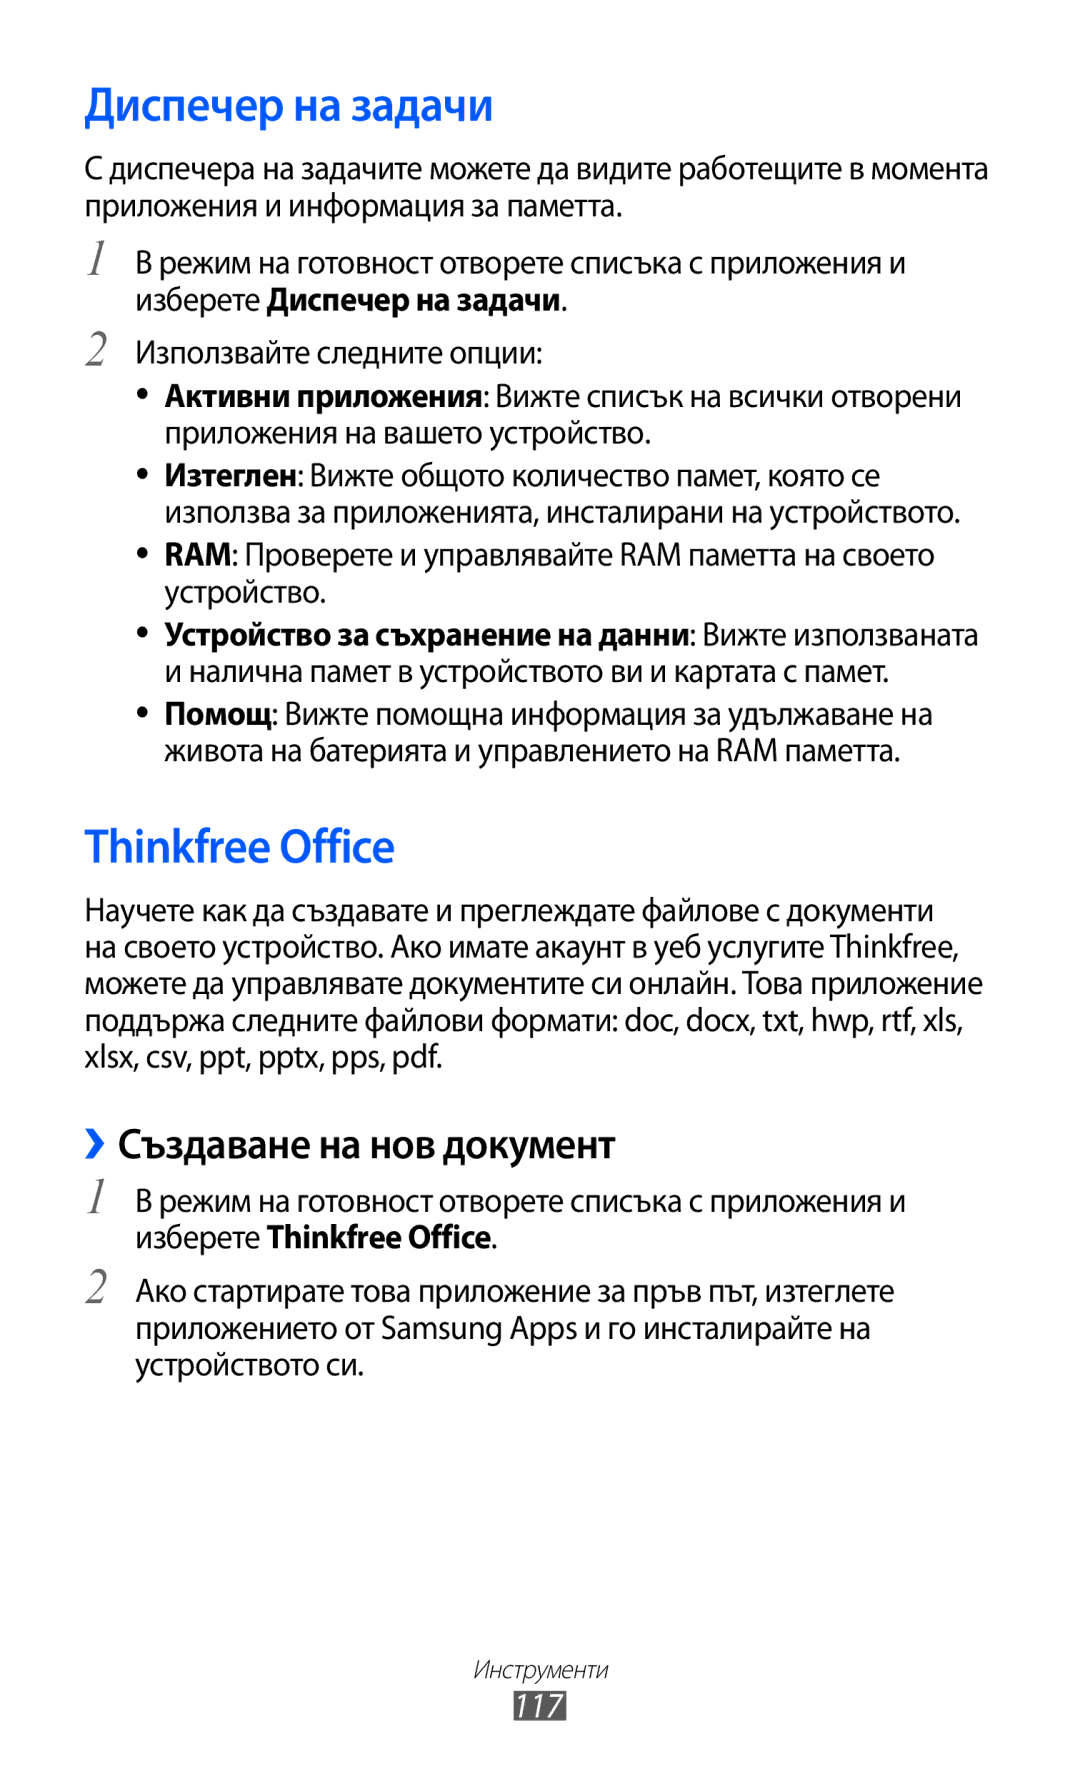 Samsung GT-S7500CWAMTL, GT-S7500ABAMTL manual Диспечер на задачи, Thinkfree Office, ››Създаване на нов документ, 117 